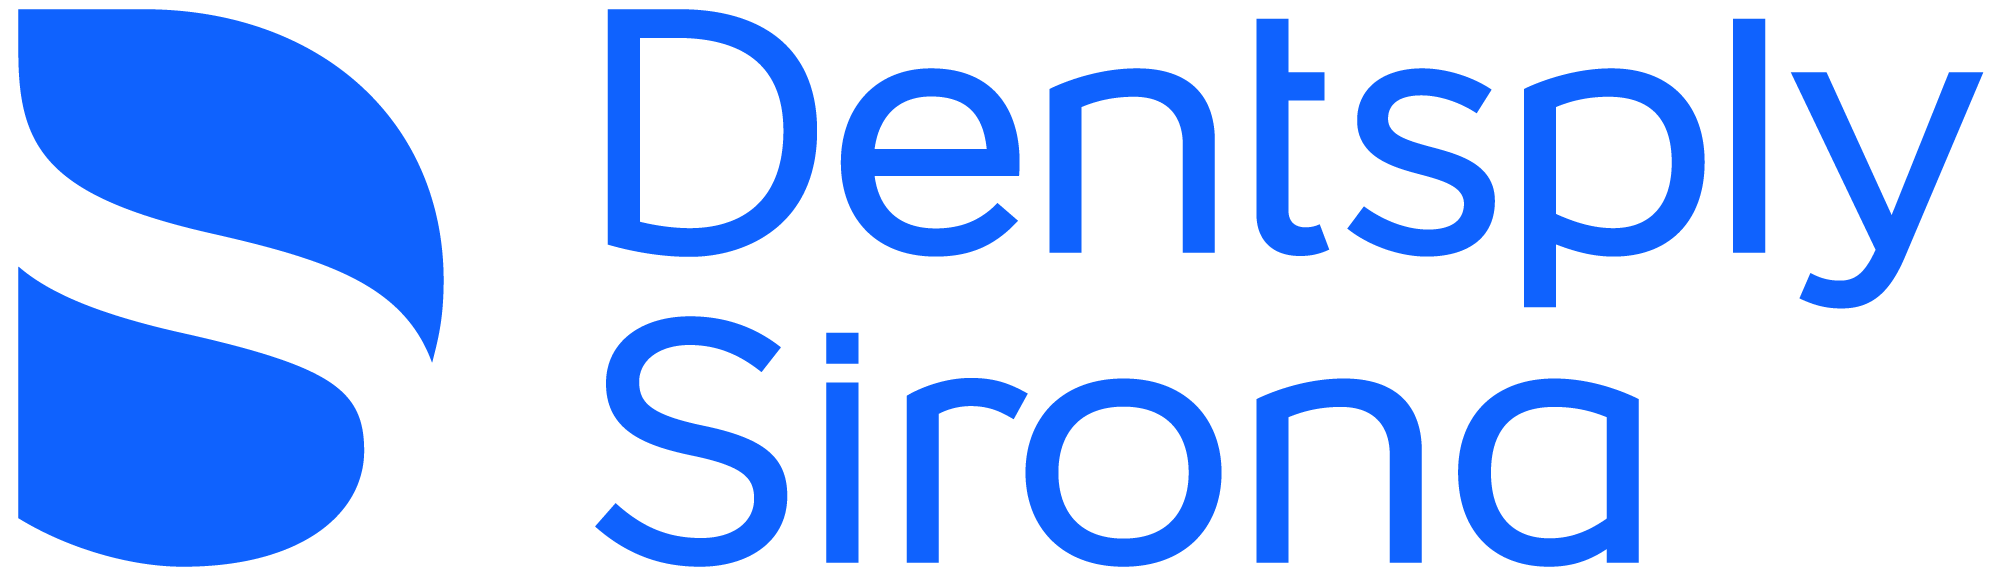 Dentsply Sirona 